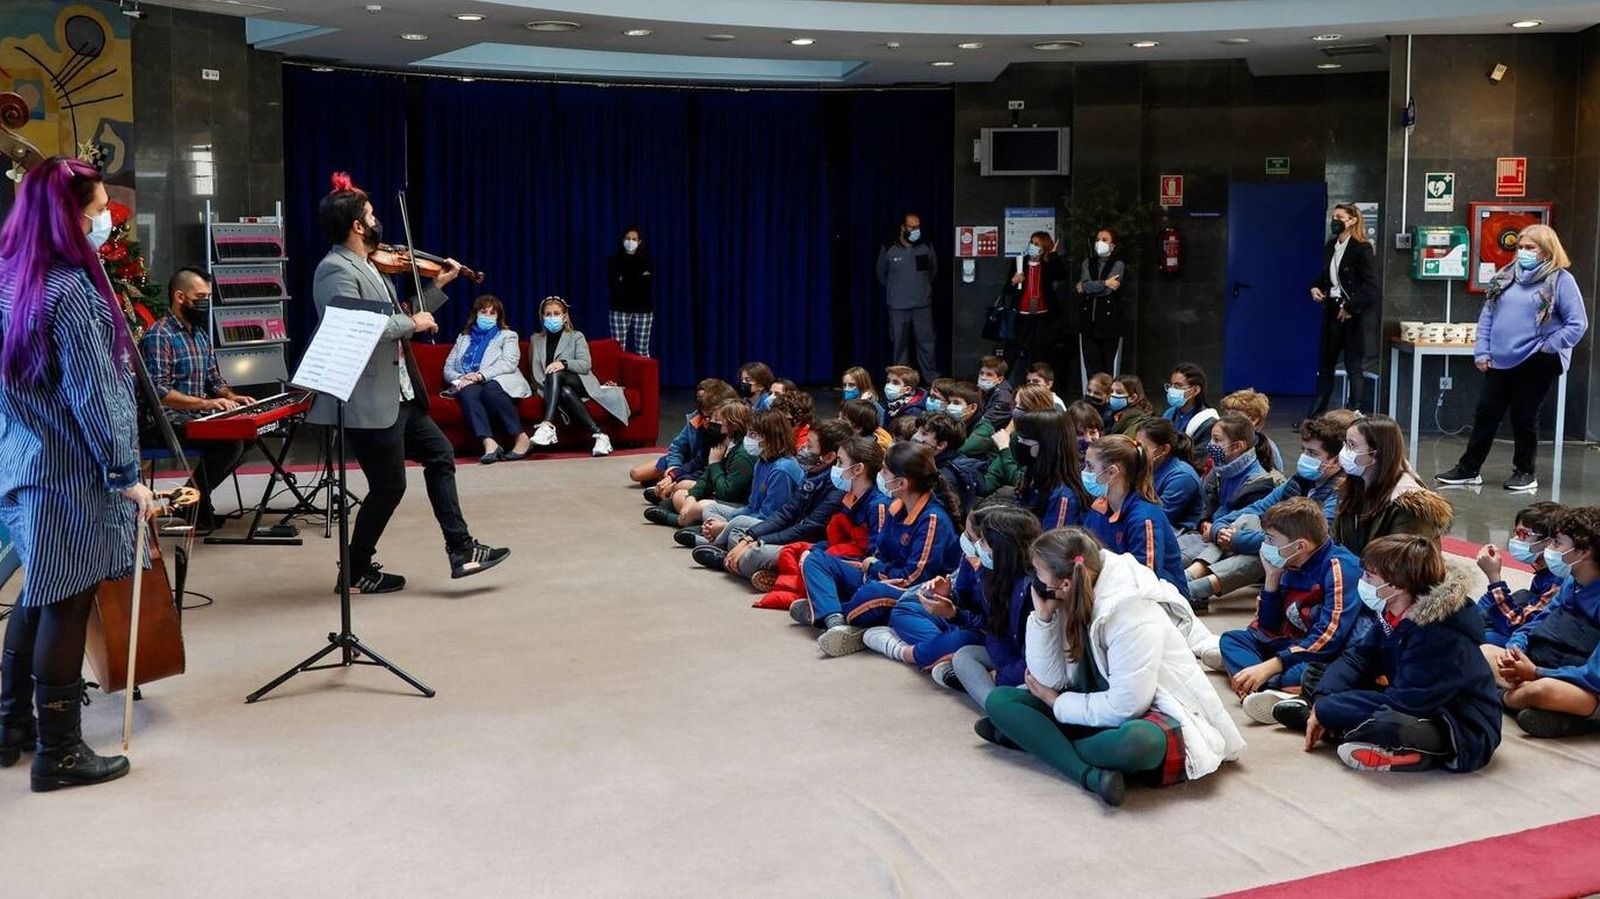 Programación infantil navideña en Pozuelo con espectáculos de música y teatro